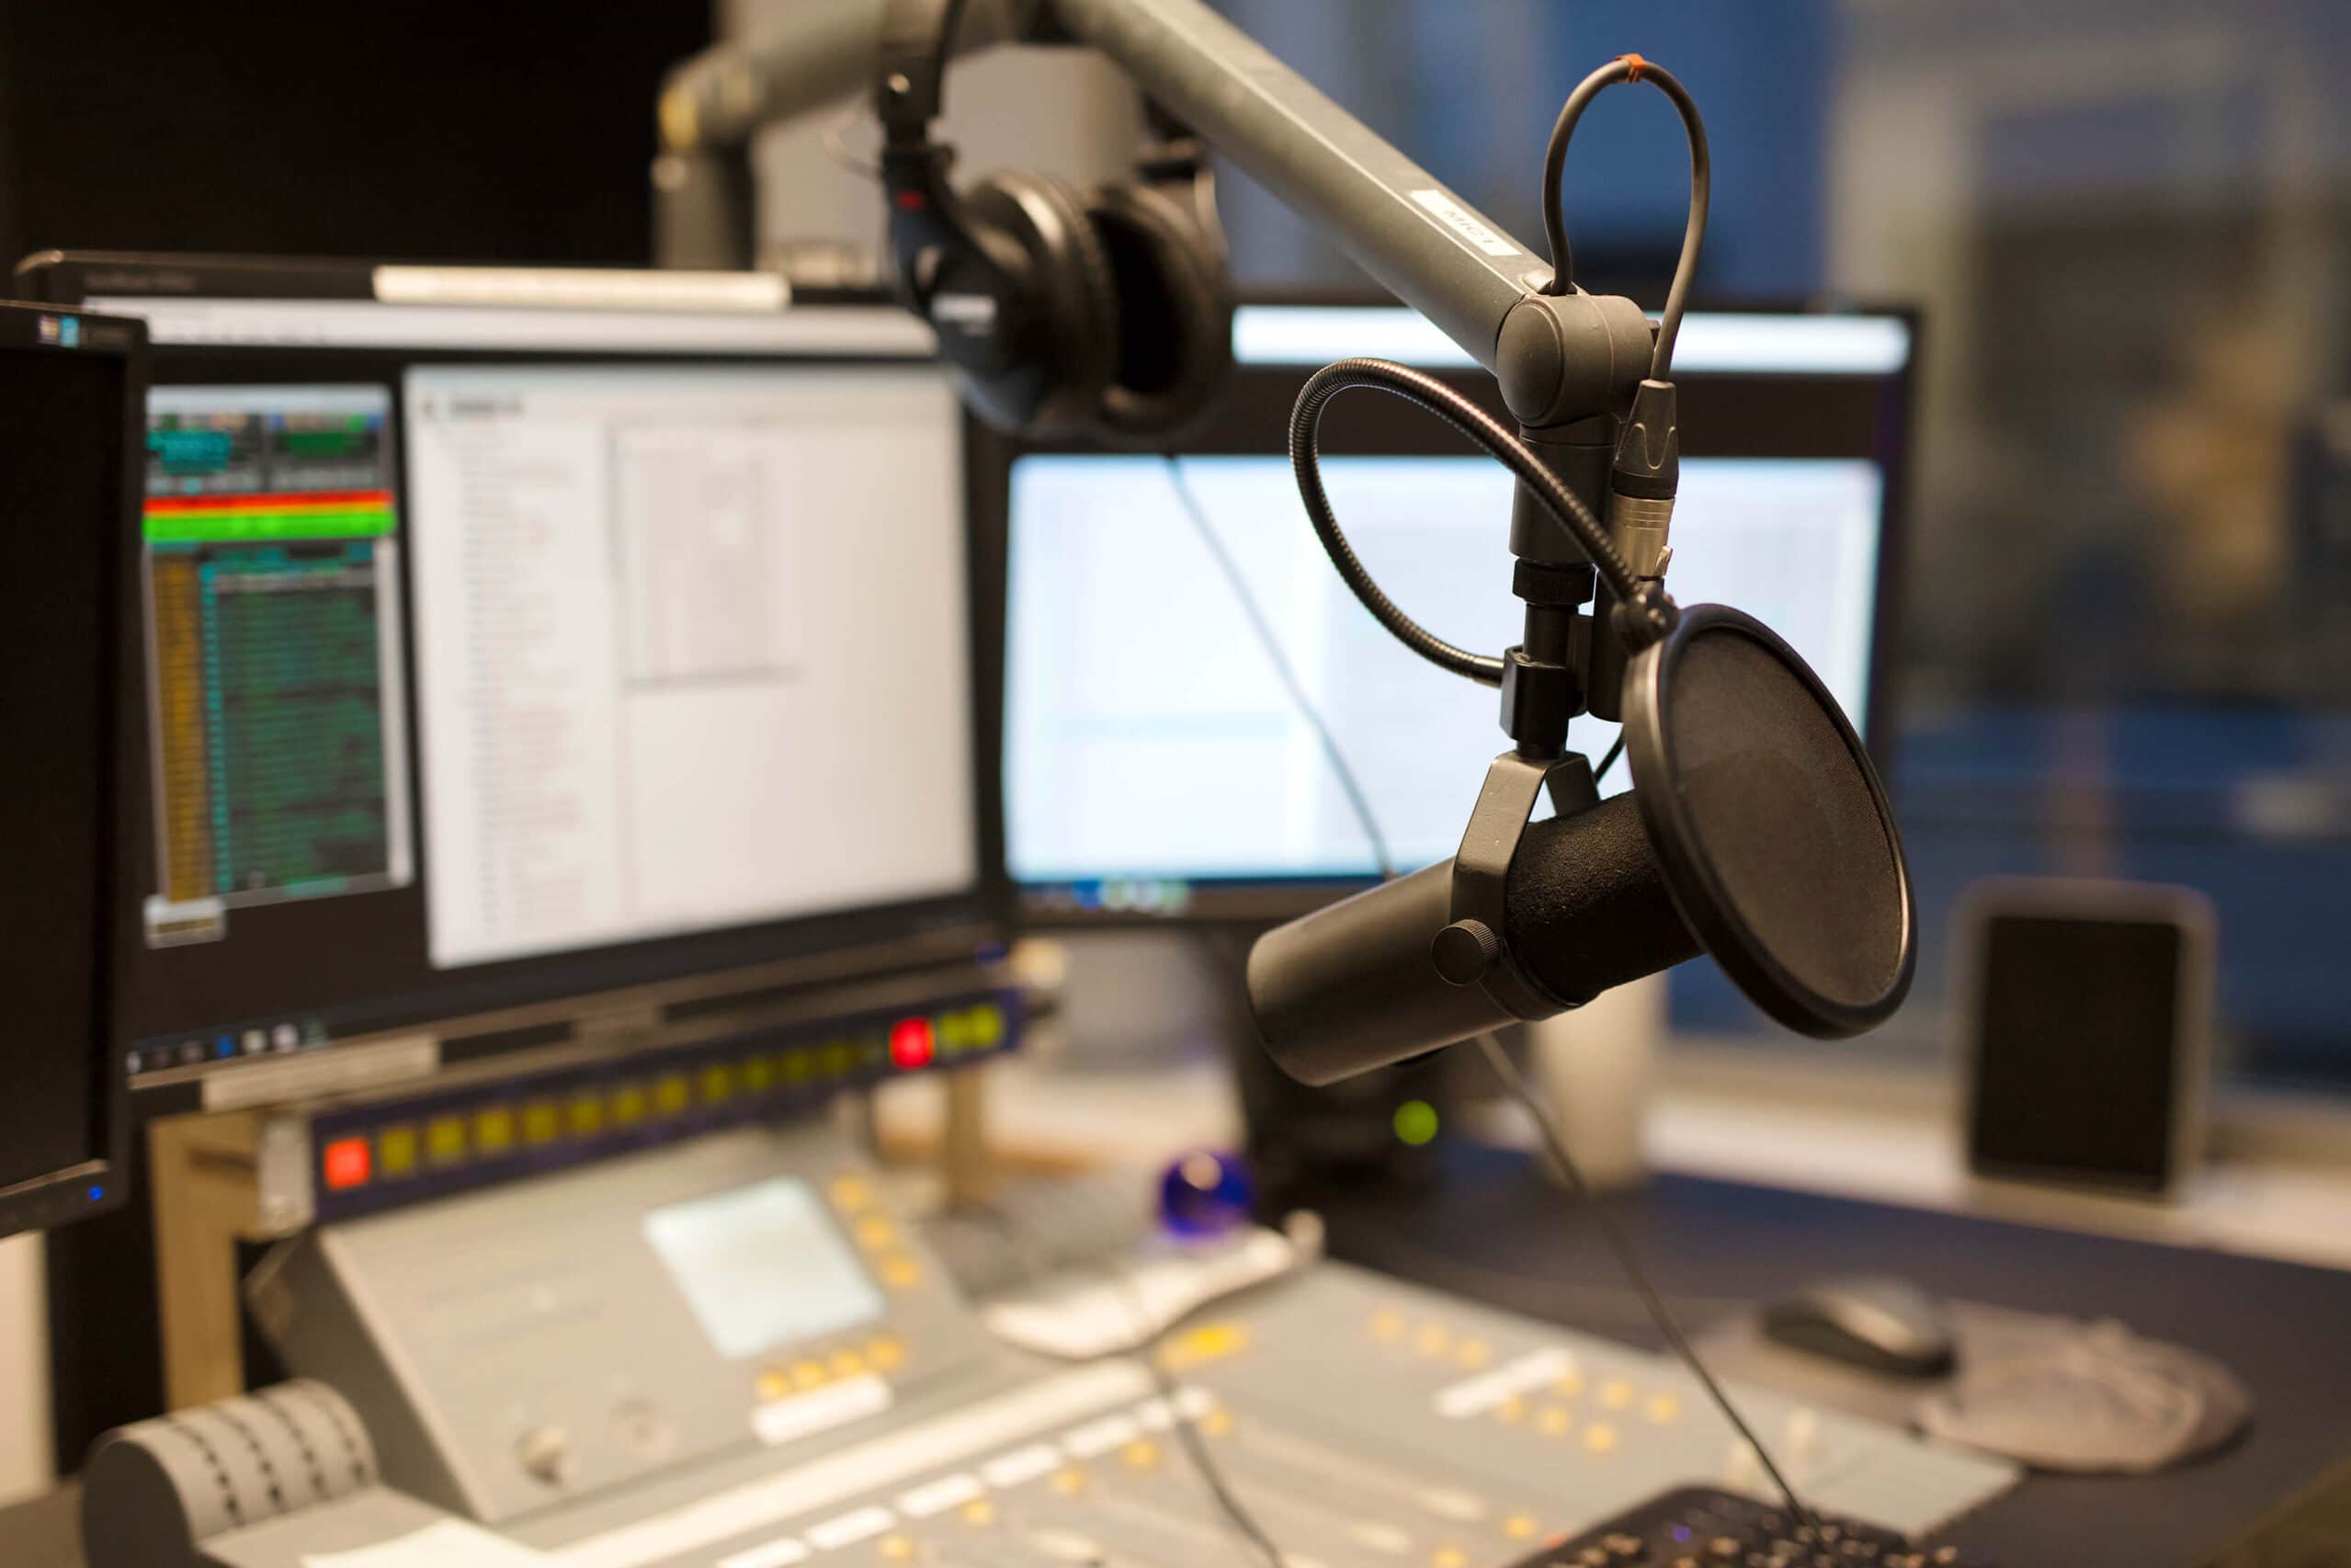 microphone-modern-radio-station-broadcasting-studi-2021-08-26-16-28-51-compressed